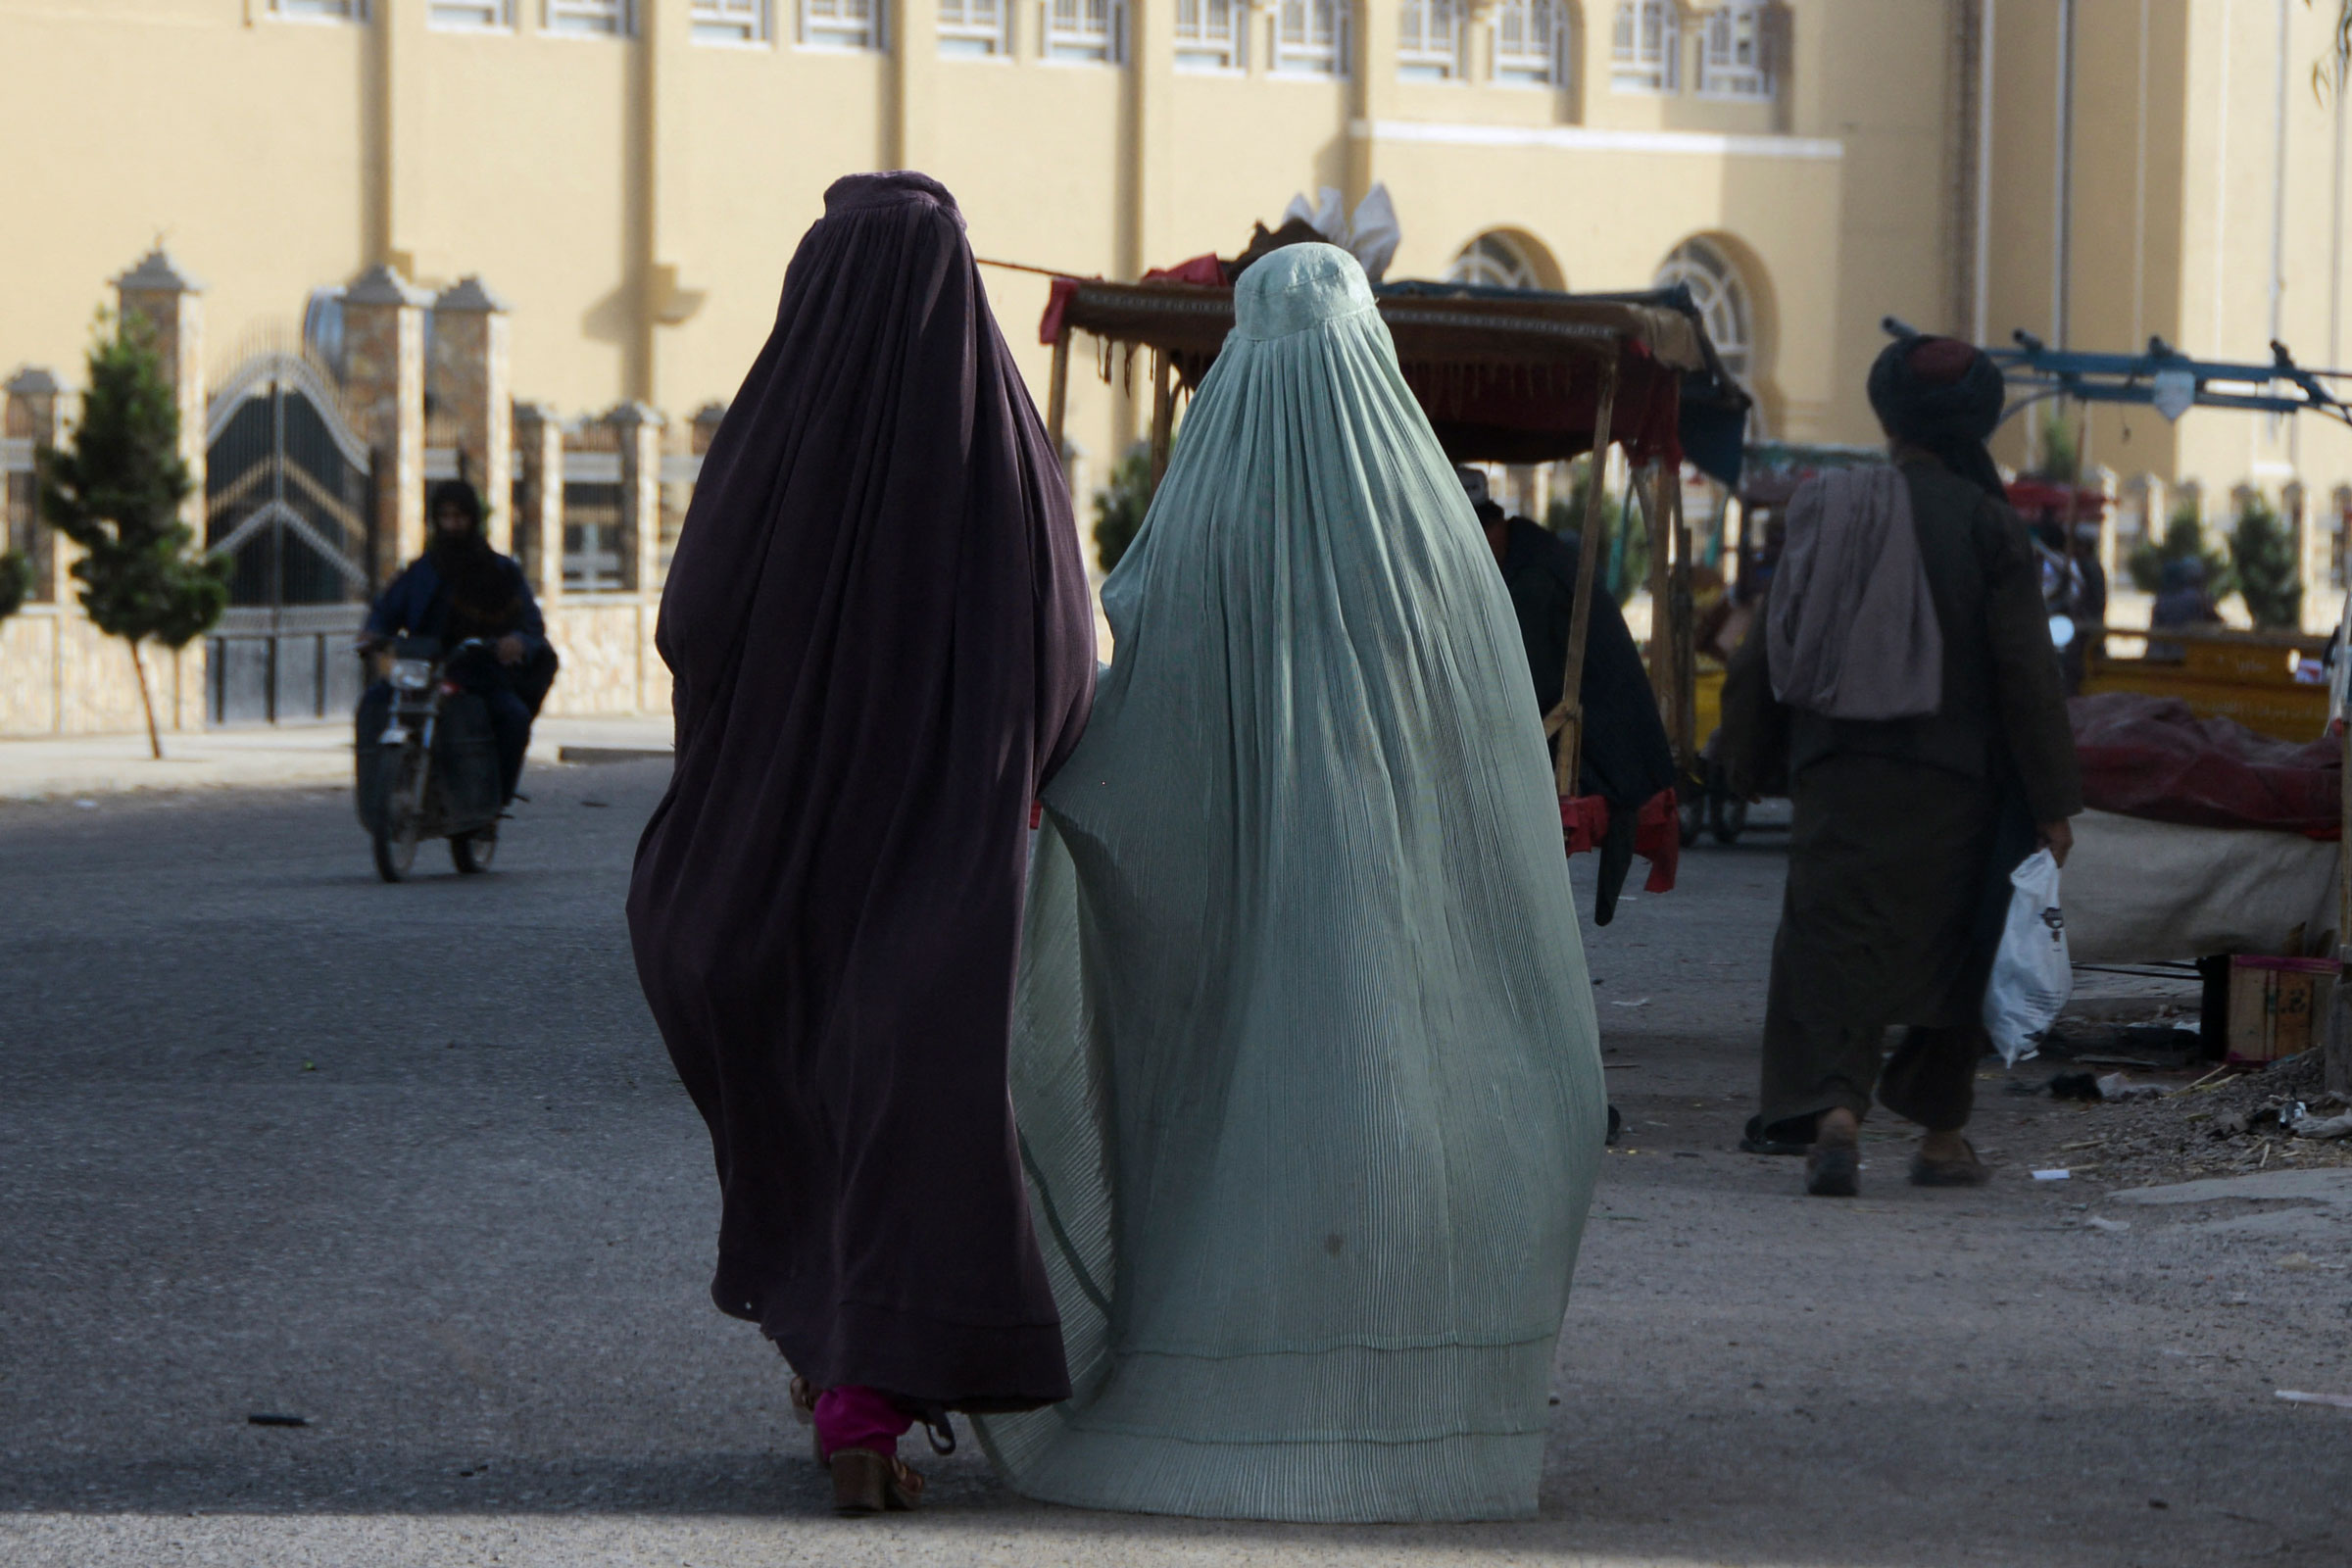 Burqa-clad women walk along a street in Kandahar